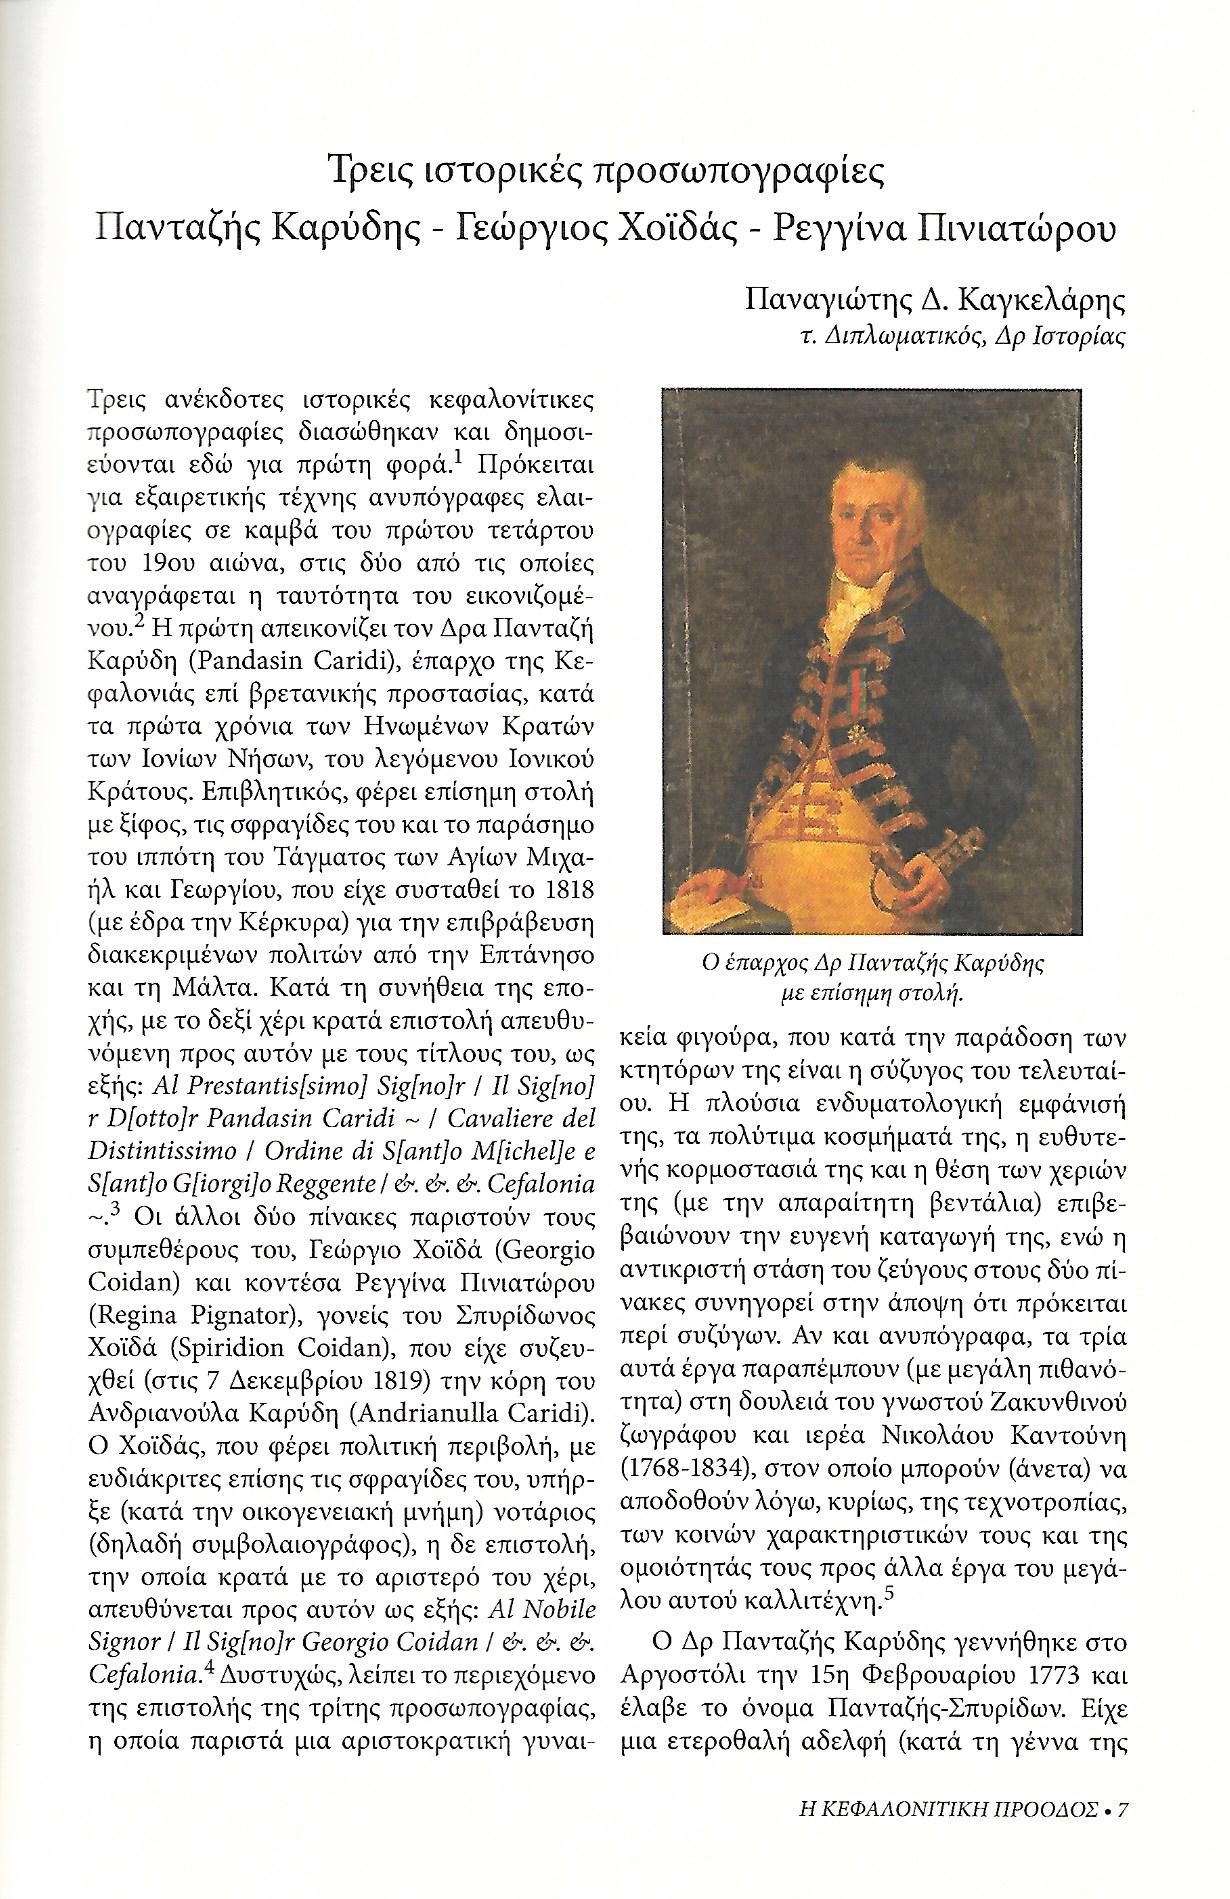 Τρεις ιστορικές προσωπογραφίες, Κεφαλονίτικη Πρόοδος, Β-27, σελ. 7